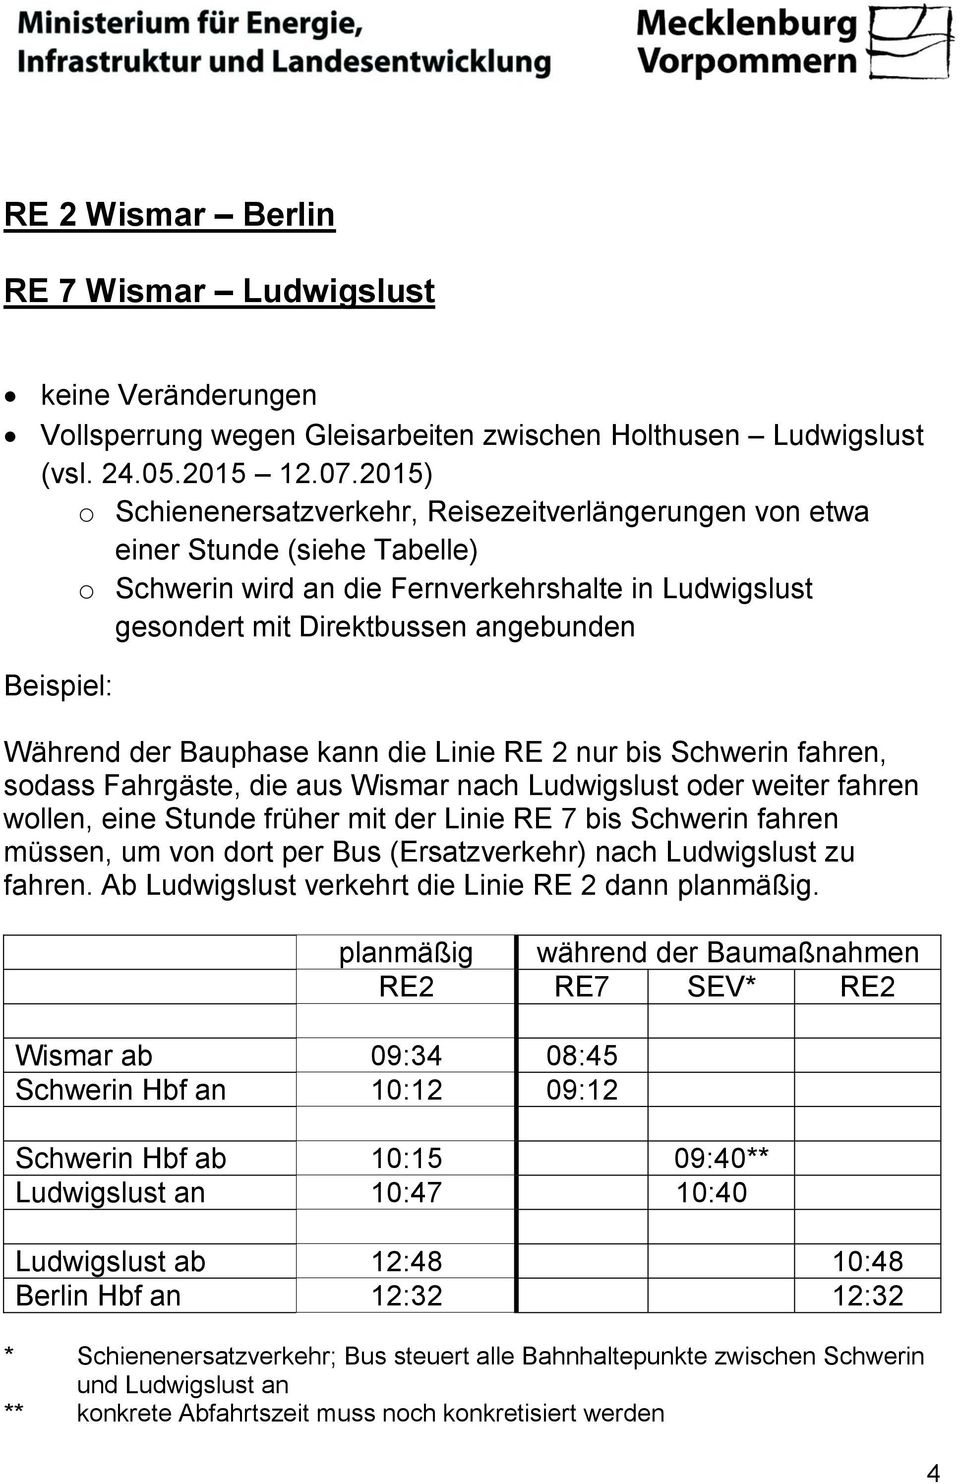 Während der Bauphase kann die Linie RE 2 nur bis Schwerin fahren, sodass Fahrgäste, die aus Wismar nach Ludwigslust oder weiter fahren wollen, eine Stunde früher mit der Linie RE 7 bis Schwerin